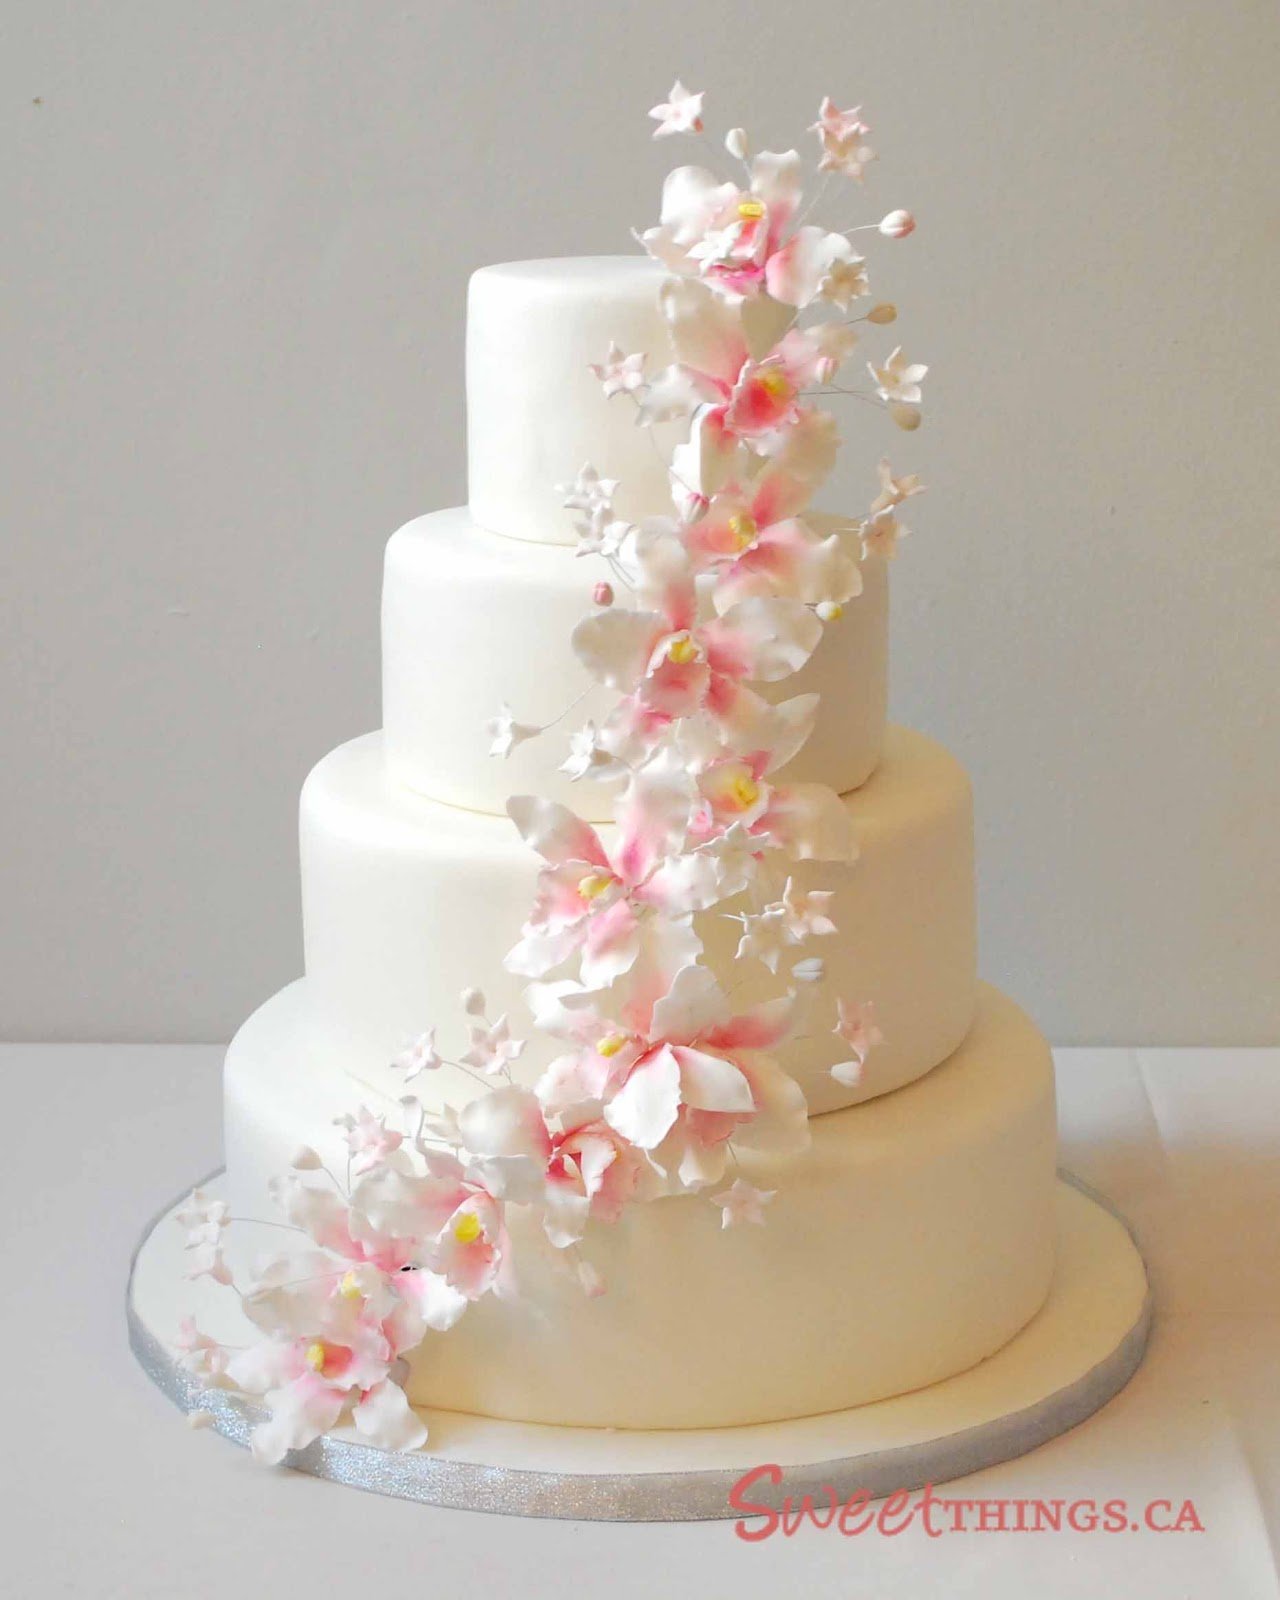 Трехярусный или трехъярусный. Свадебный торт многоярусный. Свадебный торт трехъярусный. Трехэтажный свадебный торт. Торт на свадьбу многоярусный.